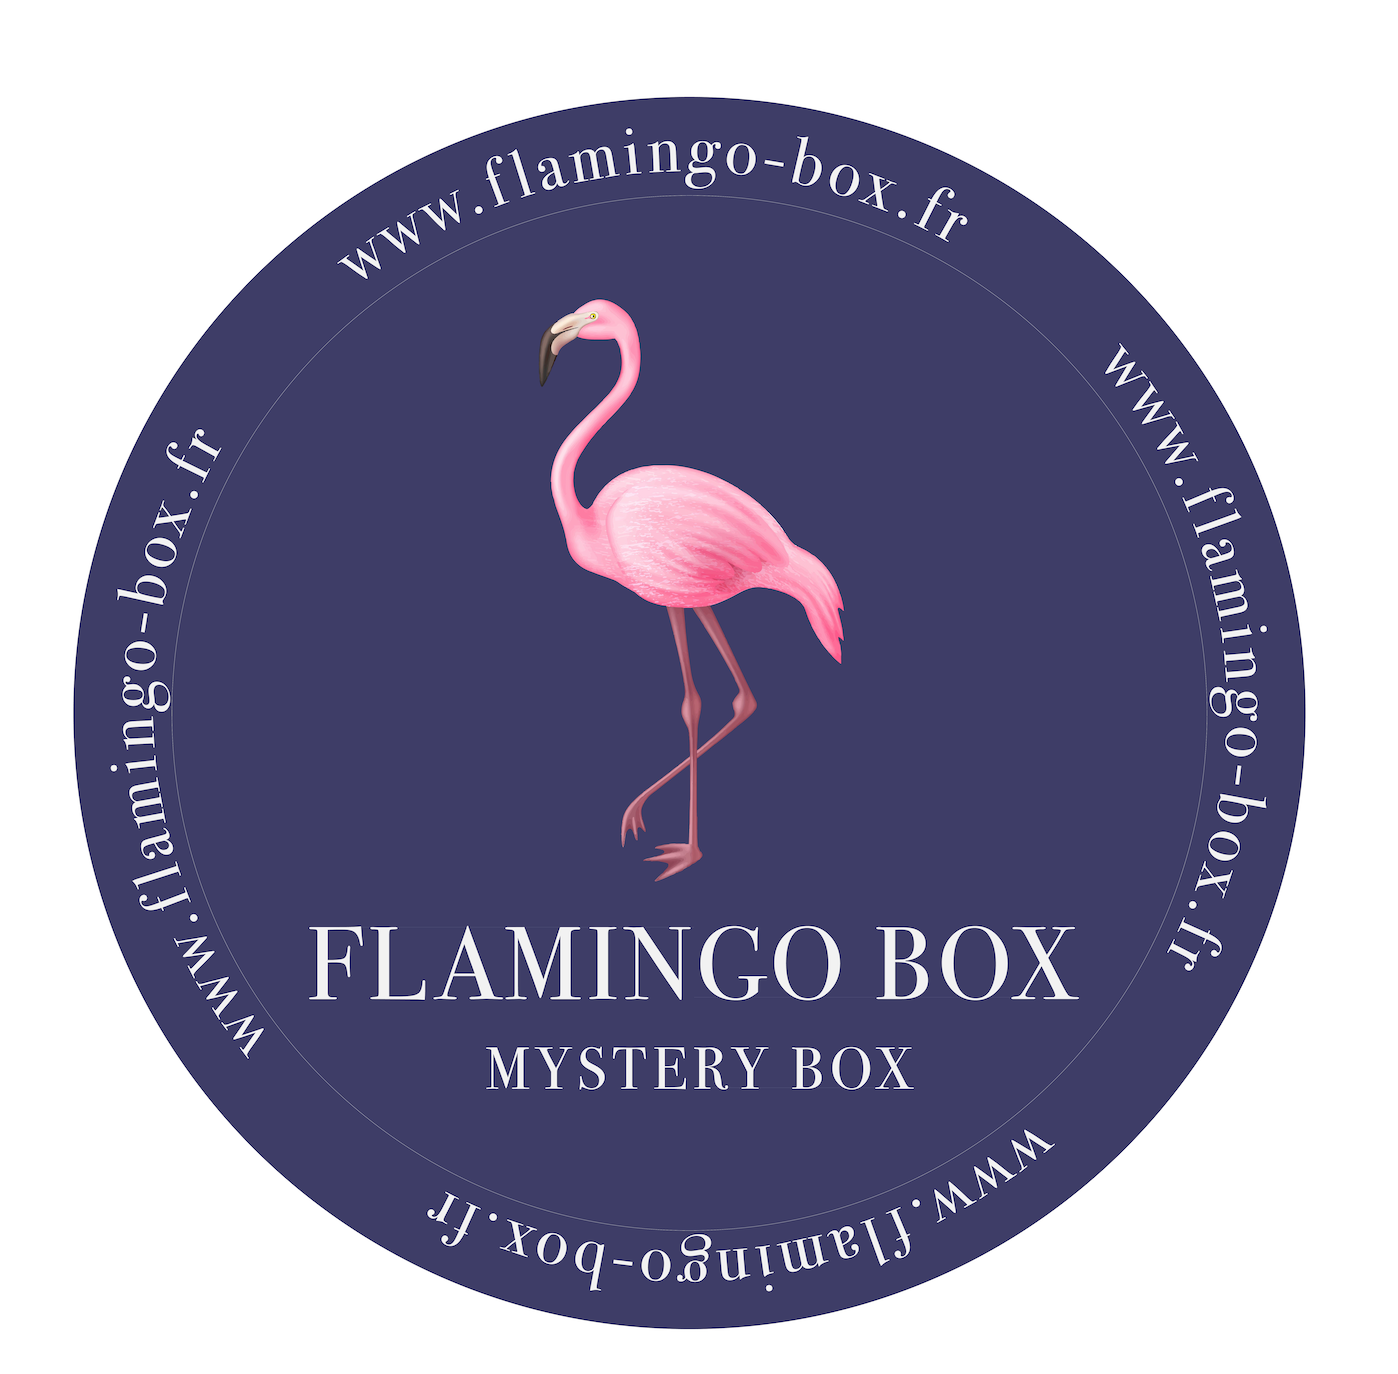 Flamingo Box fait un carton en vendant des colis perdus sans révéler leur  contenu